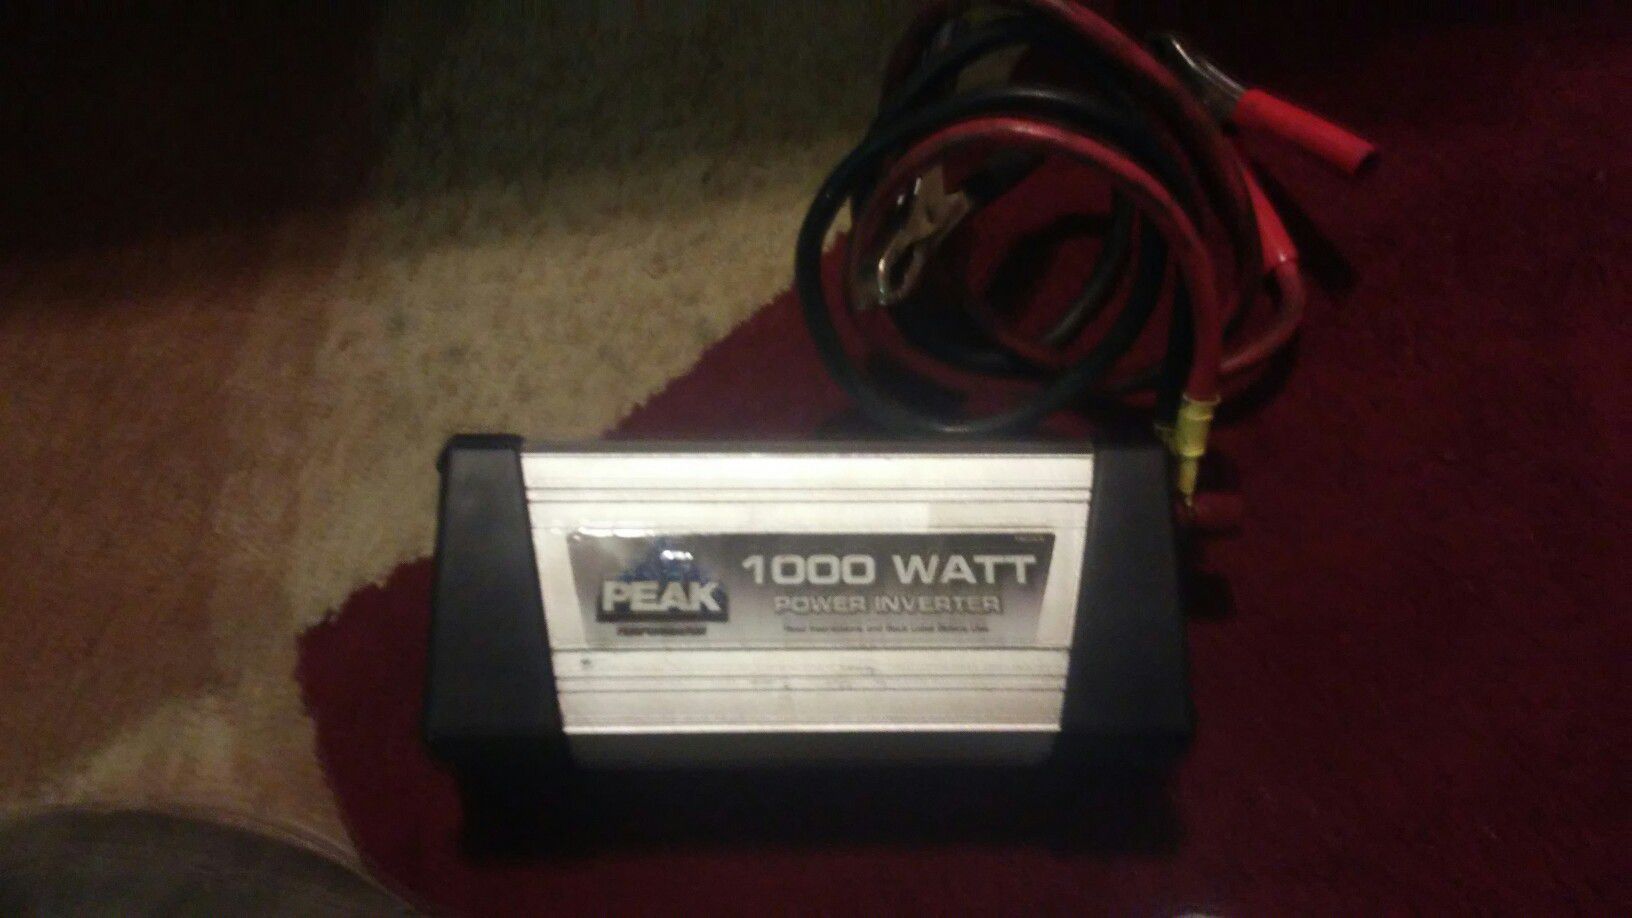 1000 watt power inverter